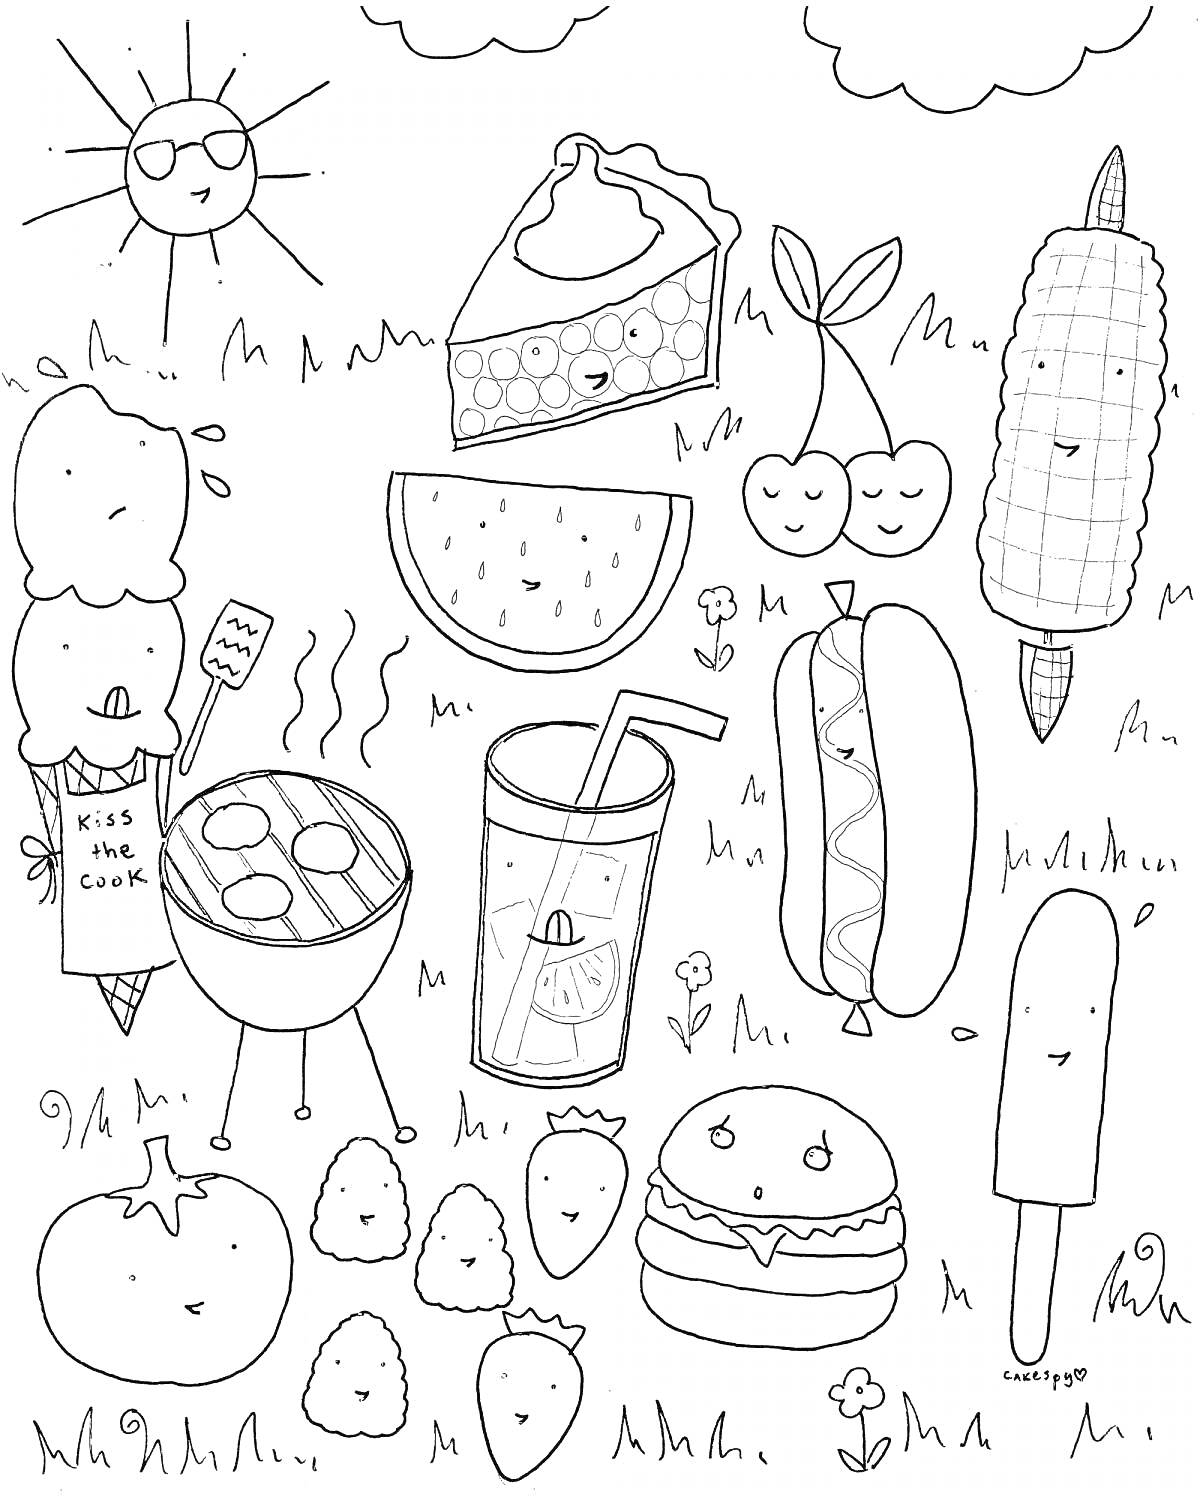 Сцена пикника со следующими элементами: солнце, два облака, кусок пирога, две вишенки на веточке, кукуруза, мороженое в вафельном рожке, гриль с сосисками и надписью 